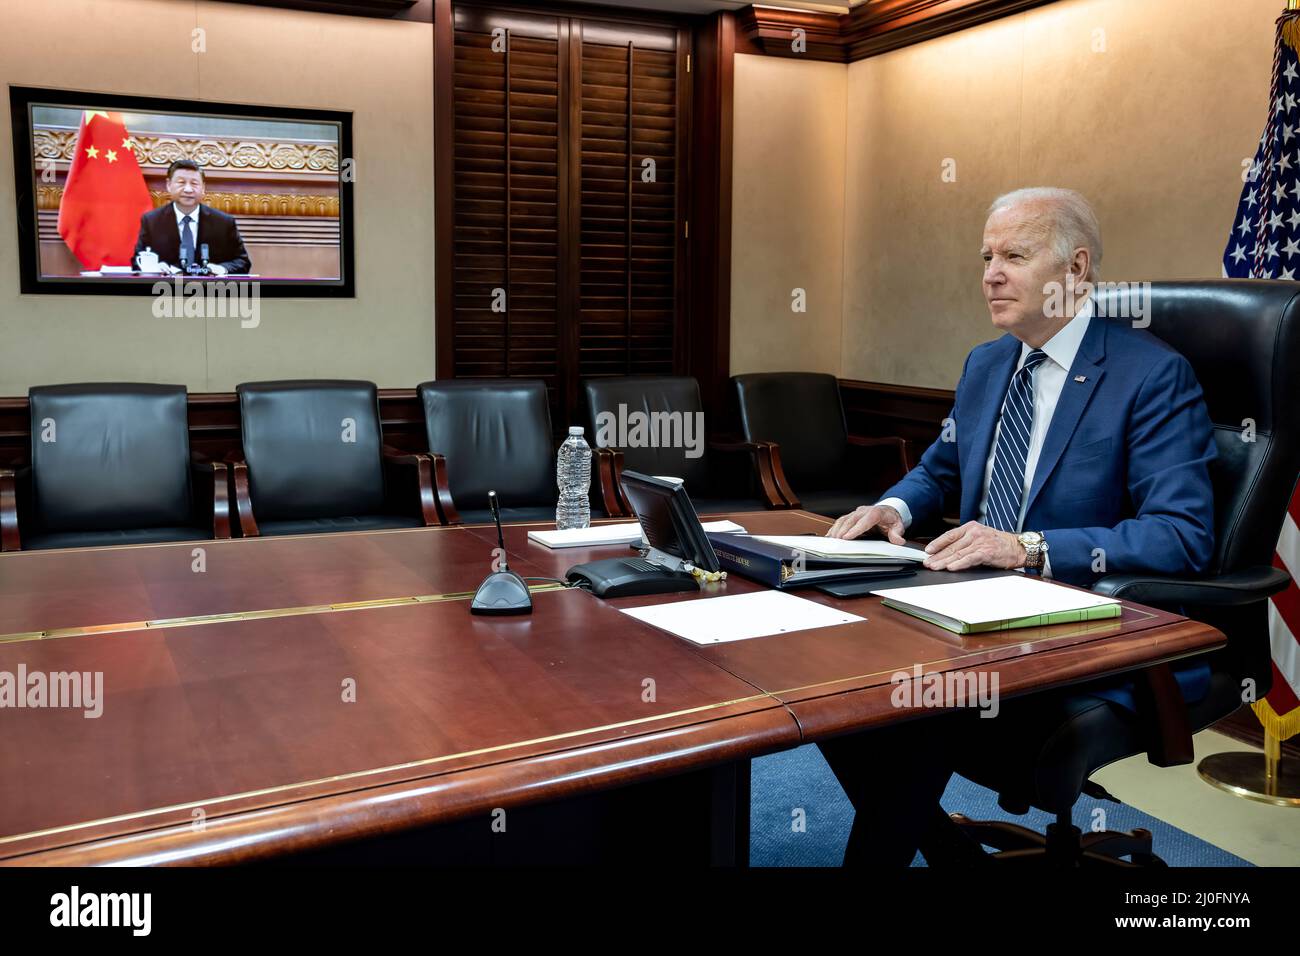 Il presidente Biden ha parlato oggi con il presidente Xi Jinping della Repubblica popolare cinese dell’invasione inprovocata della Russia dell’Ucraina. (Casa bianca foto) Foto Stock